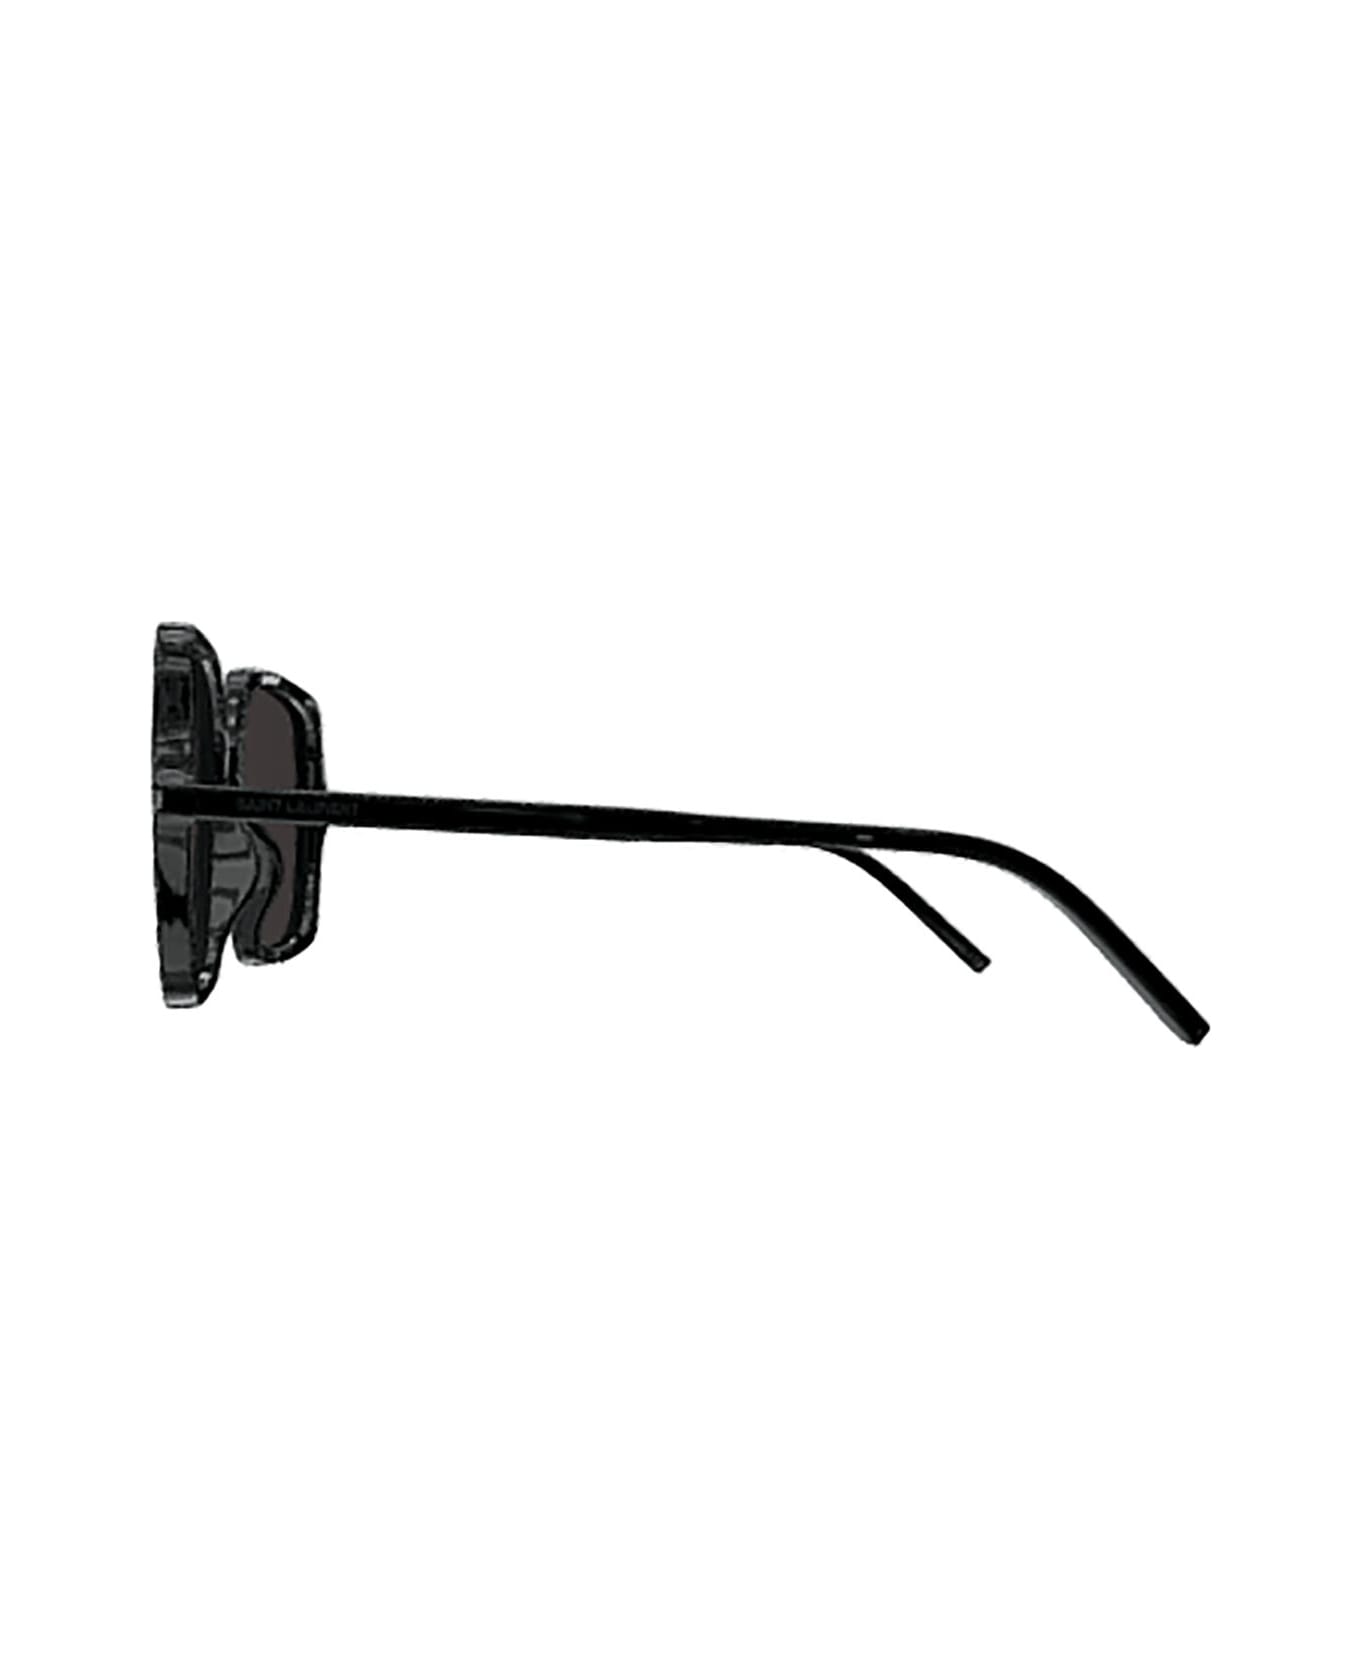 Saint Laurent Eyewear Sl 591 Sunglasses - 001 black black black サングラス